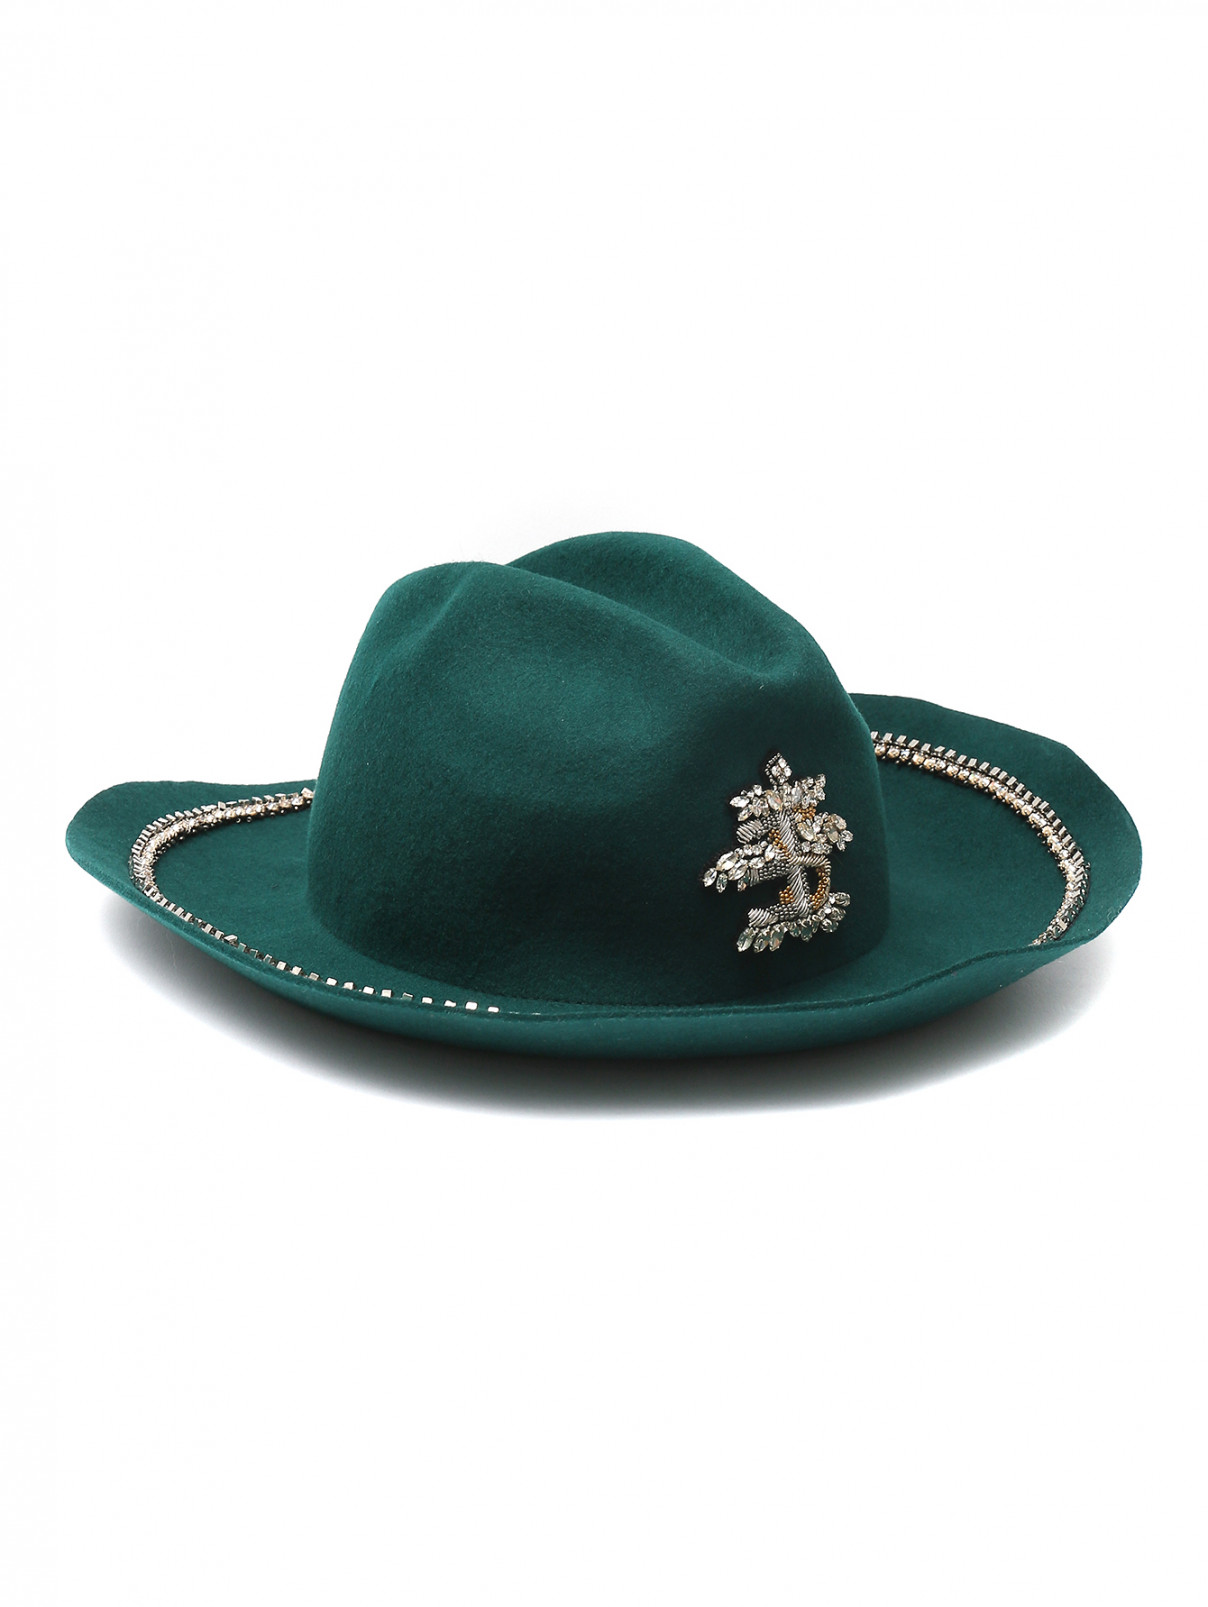 Шляпа из шерсти, декорированная стразами Ermanno Scervino  –  Общий вид  – Цвет:  Зеленый